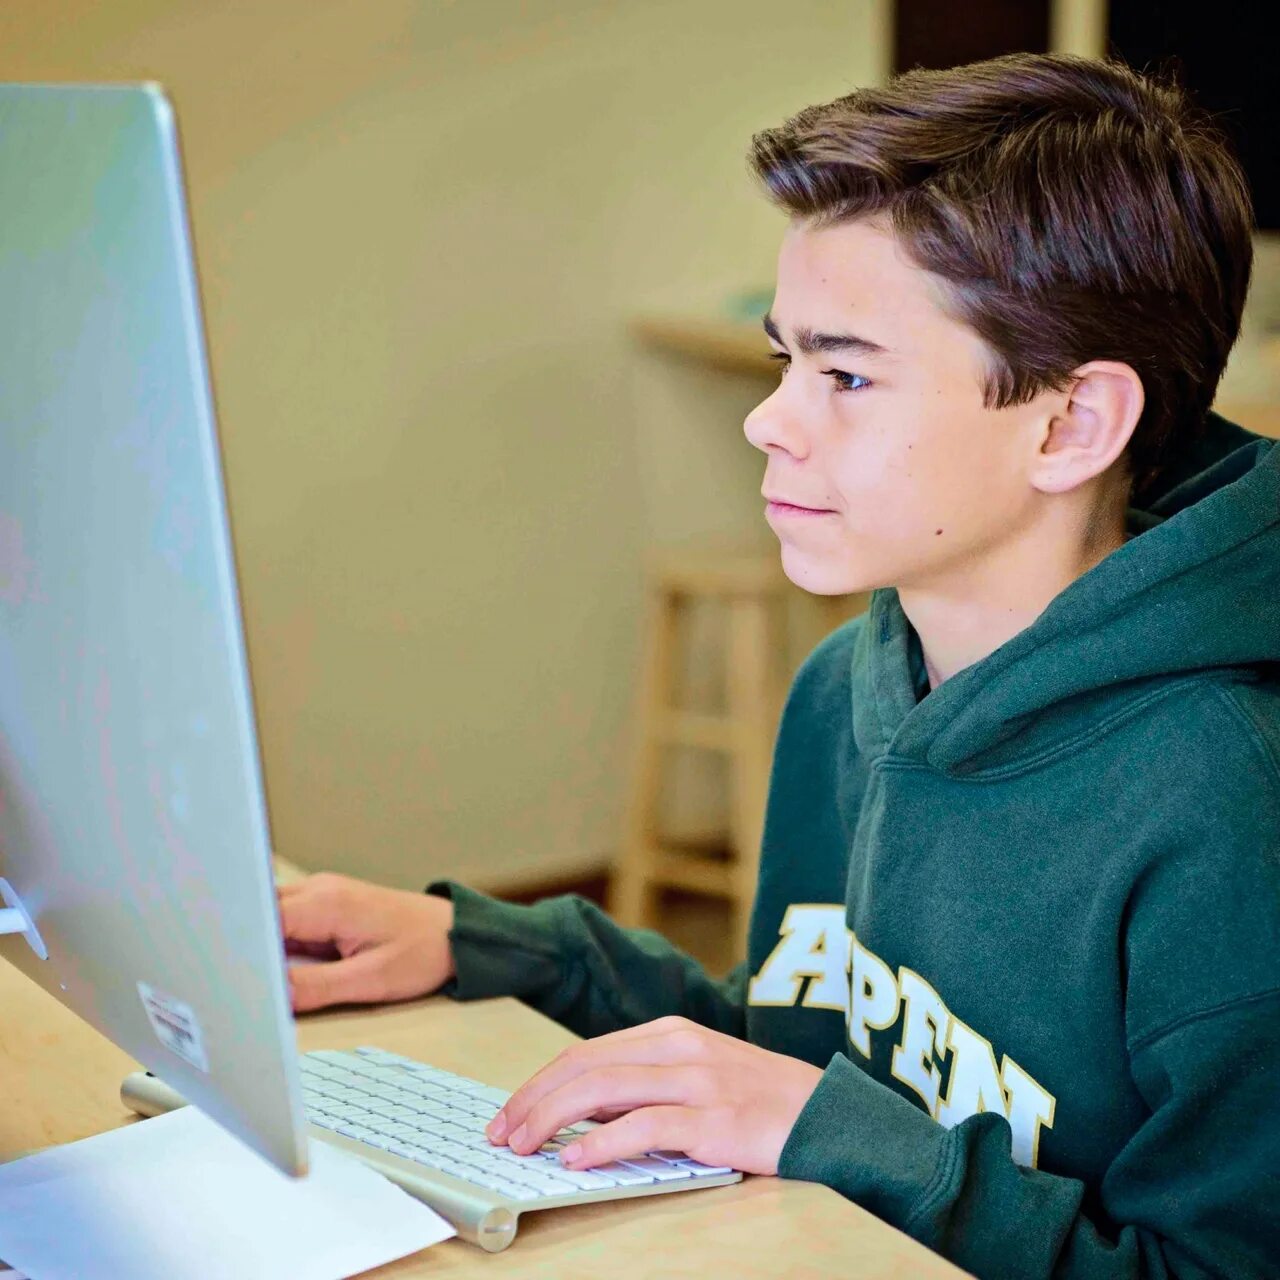 Подростку дали 15 лет. Подросток за компьютером. Подросток и компьютер. Серьезный подросток. Тинейджер за компьютером.